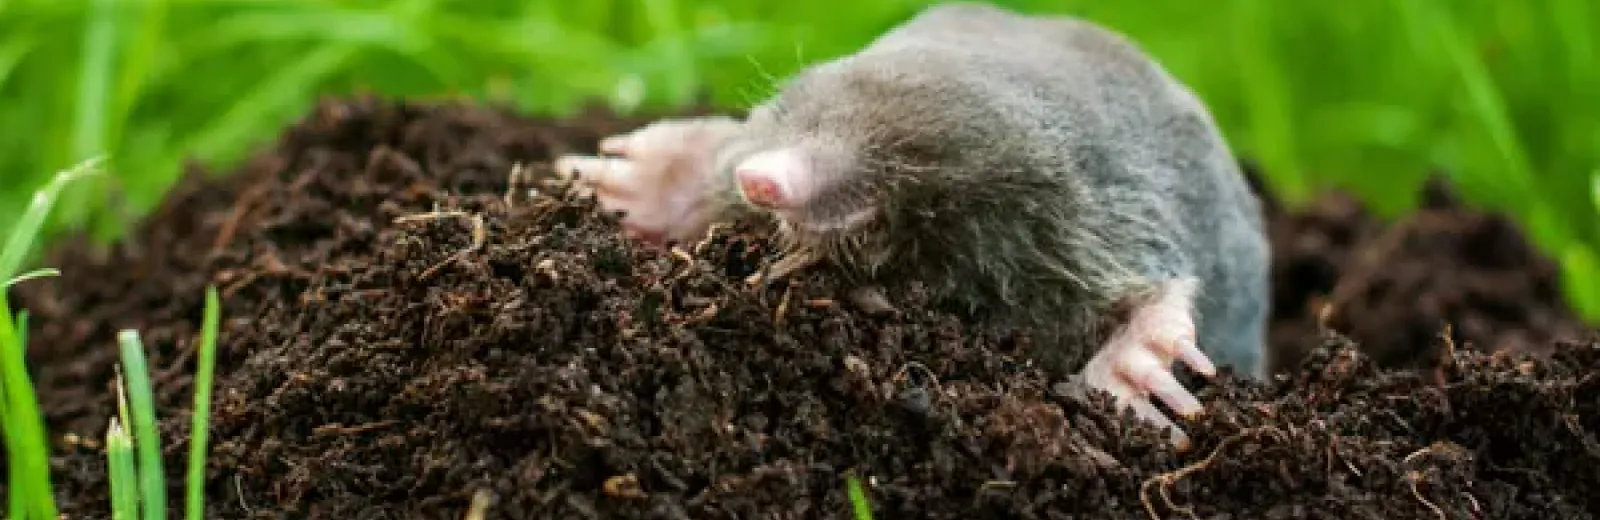 Mole in lawn